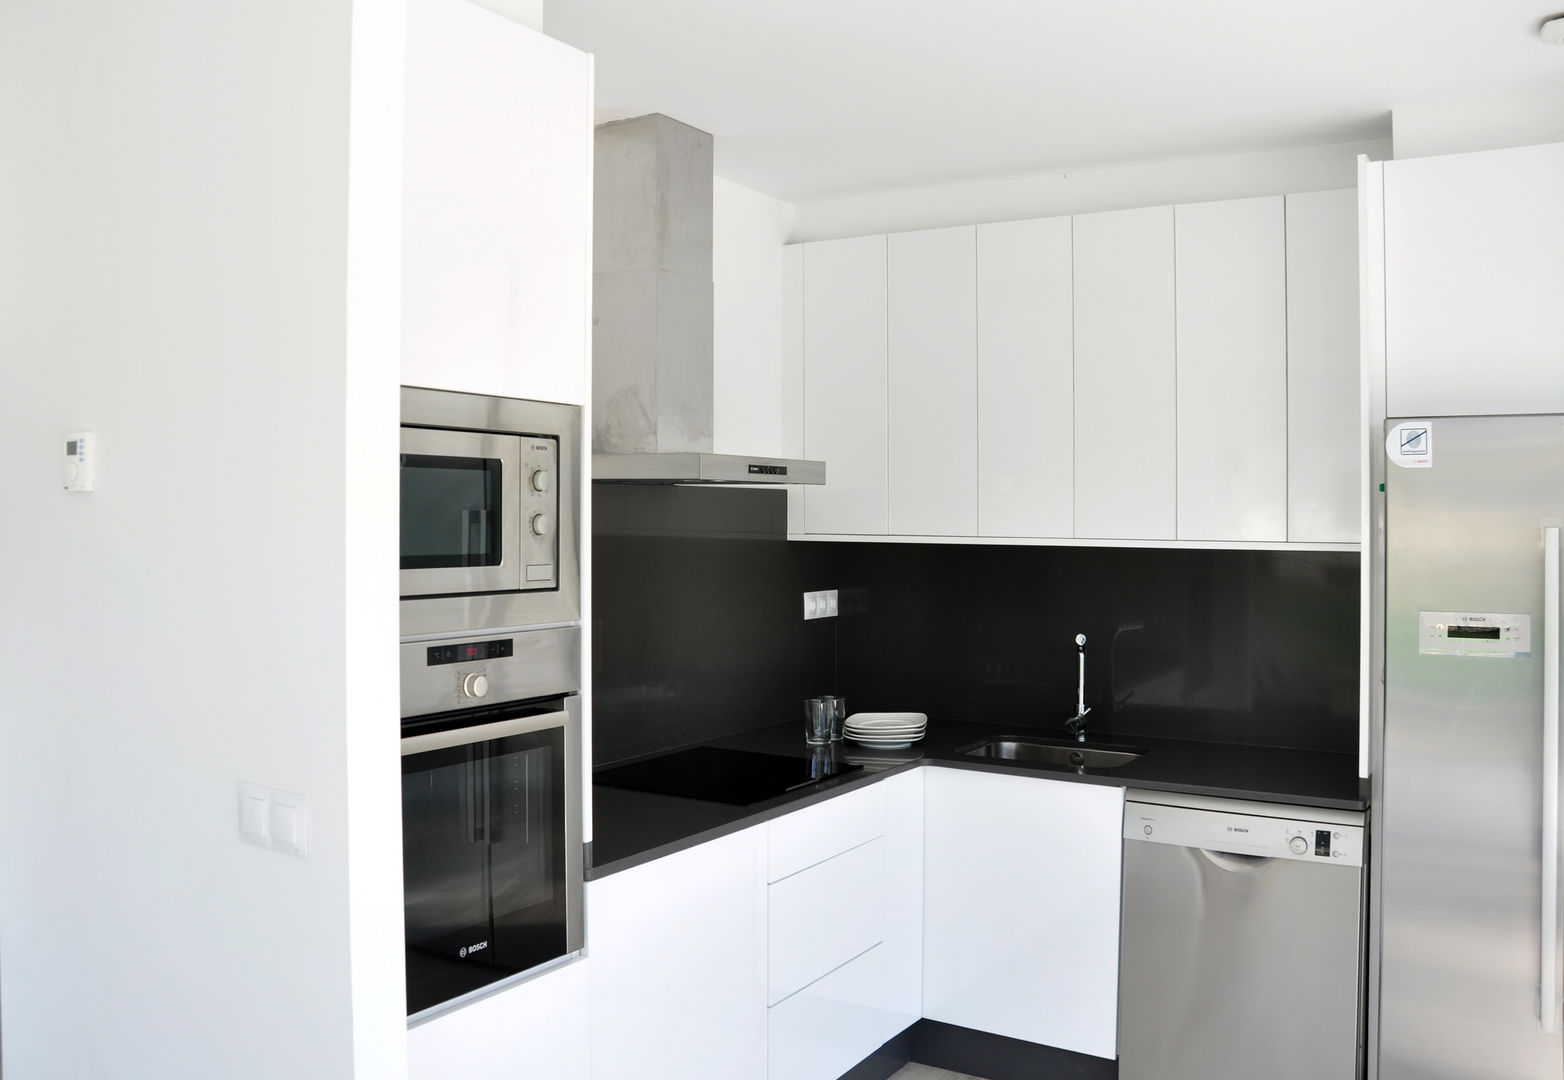 Casa prefabricada Cube 100 m2 - Cocina homify Cocinas modernas: Ideas, imágenes y decoración